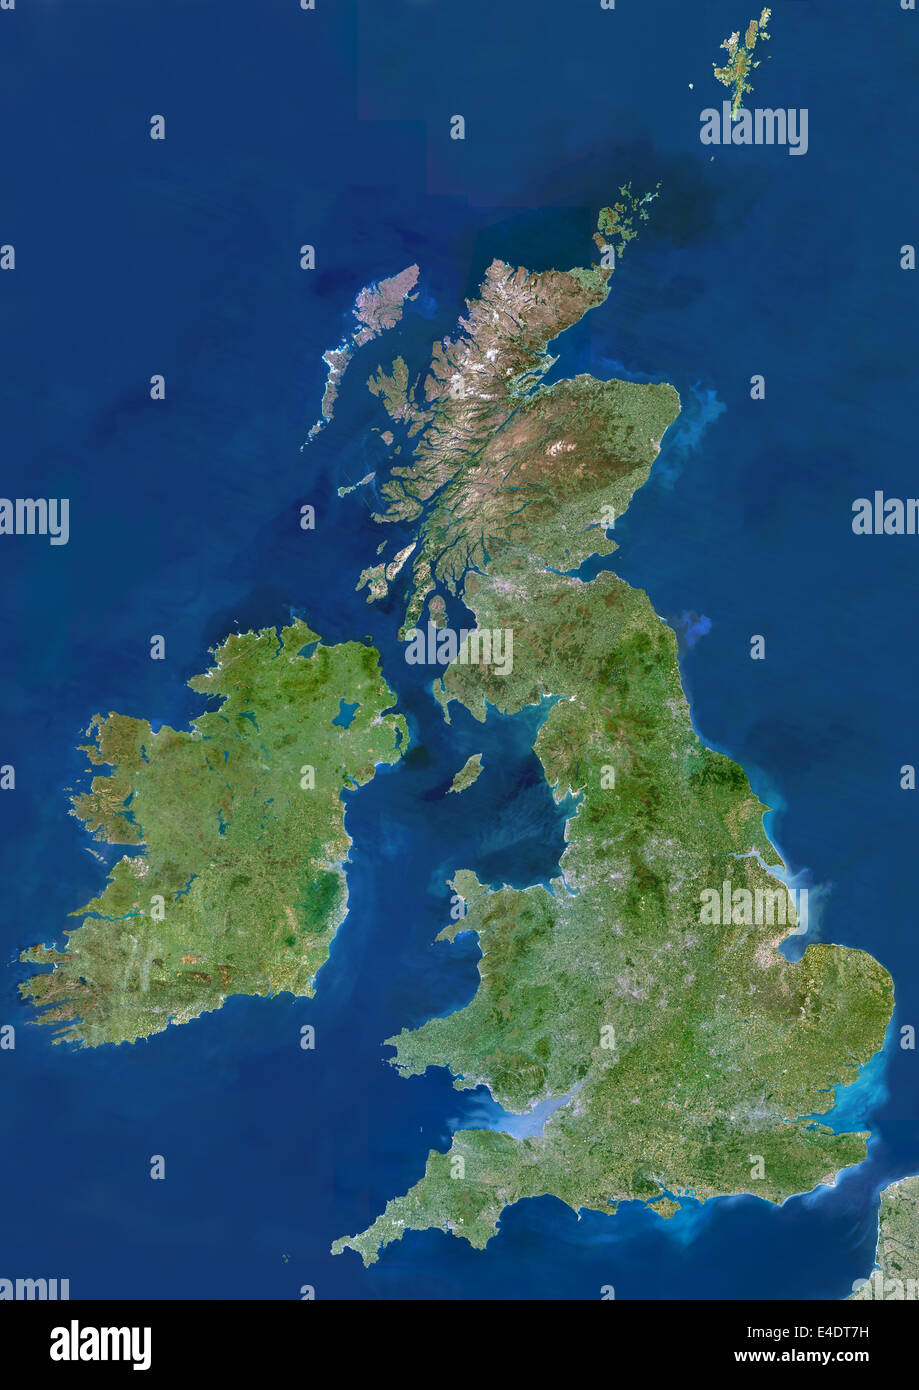 Isole britanniche, True Color immagine satellitare. Isole britanniche, immagine satellitare. L'isola di Gran Bretagna comprende Inghilterra (centr Foto Stock